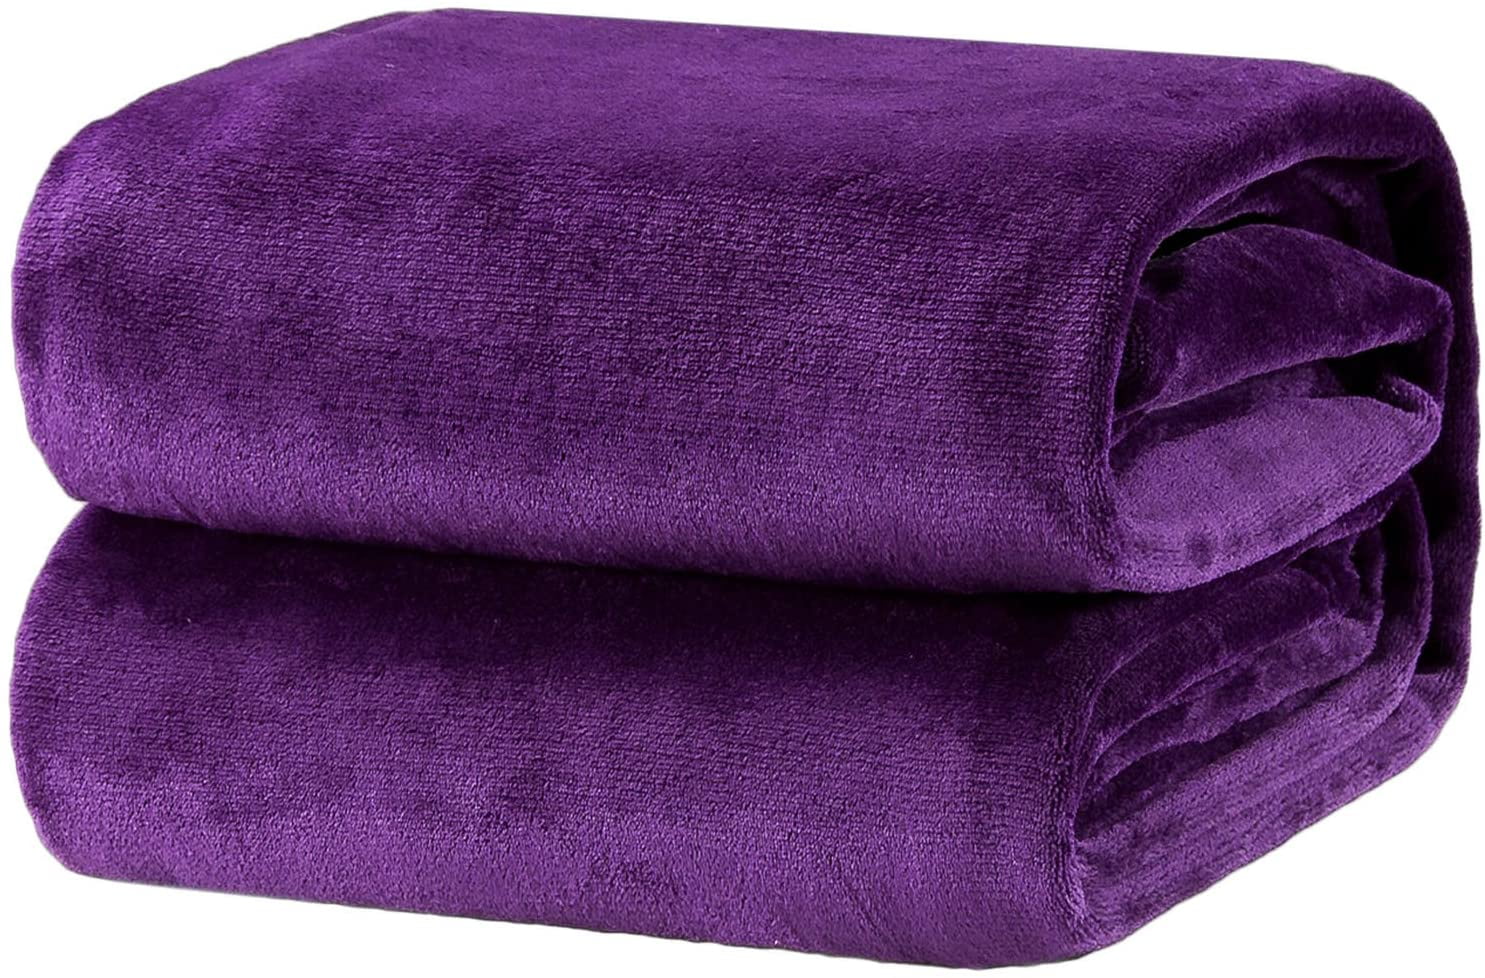 Details about   Bedsure Fleece Baby Blanket 